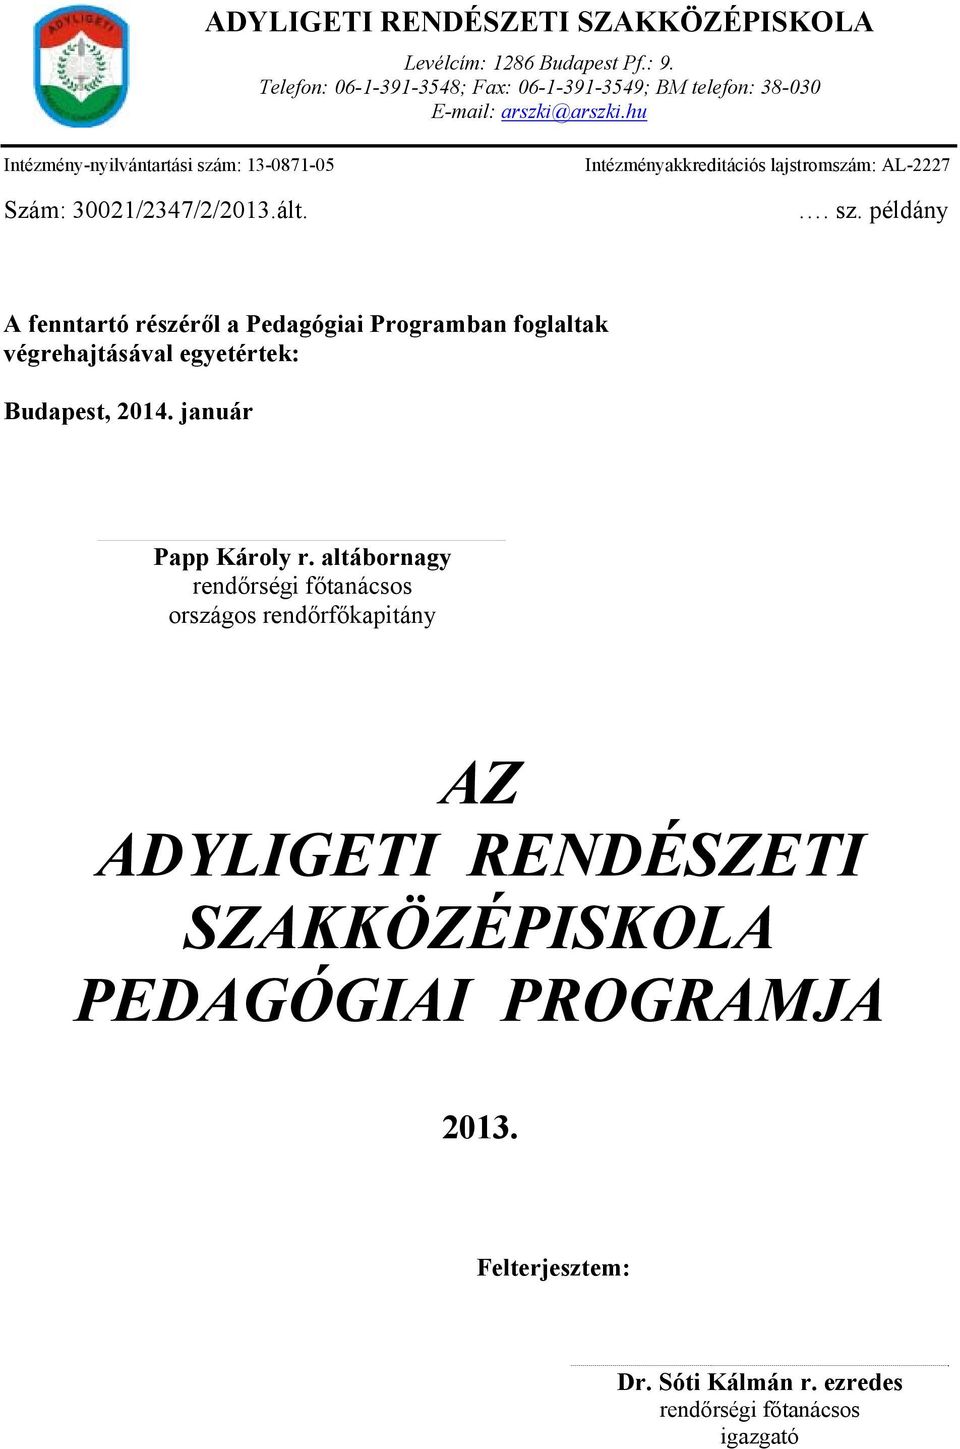 hu Intézmény-nyilvántartási szám: 13-0871-05 Szám: 30021/2347/2/2013.ált. Intézményakkreditációs lajstromszám: AL-2227. sz. példány A fenntartó részéről a Pedagógiai Programban foglaltak végrehajtásával egyetértek: Budapest, 2014.